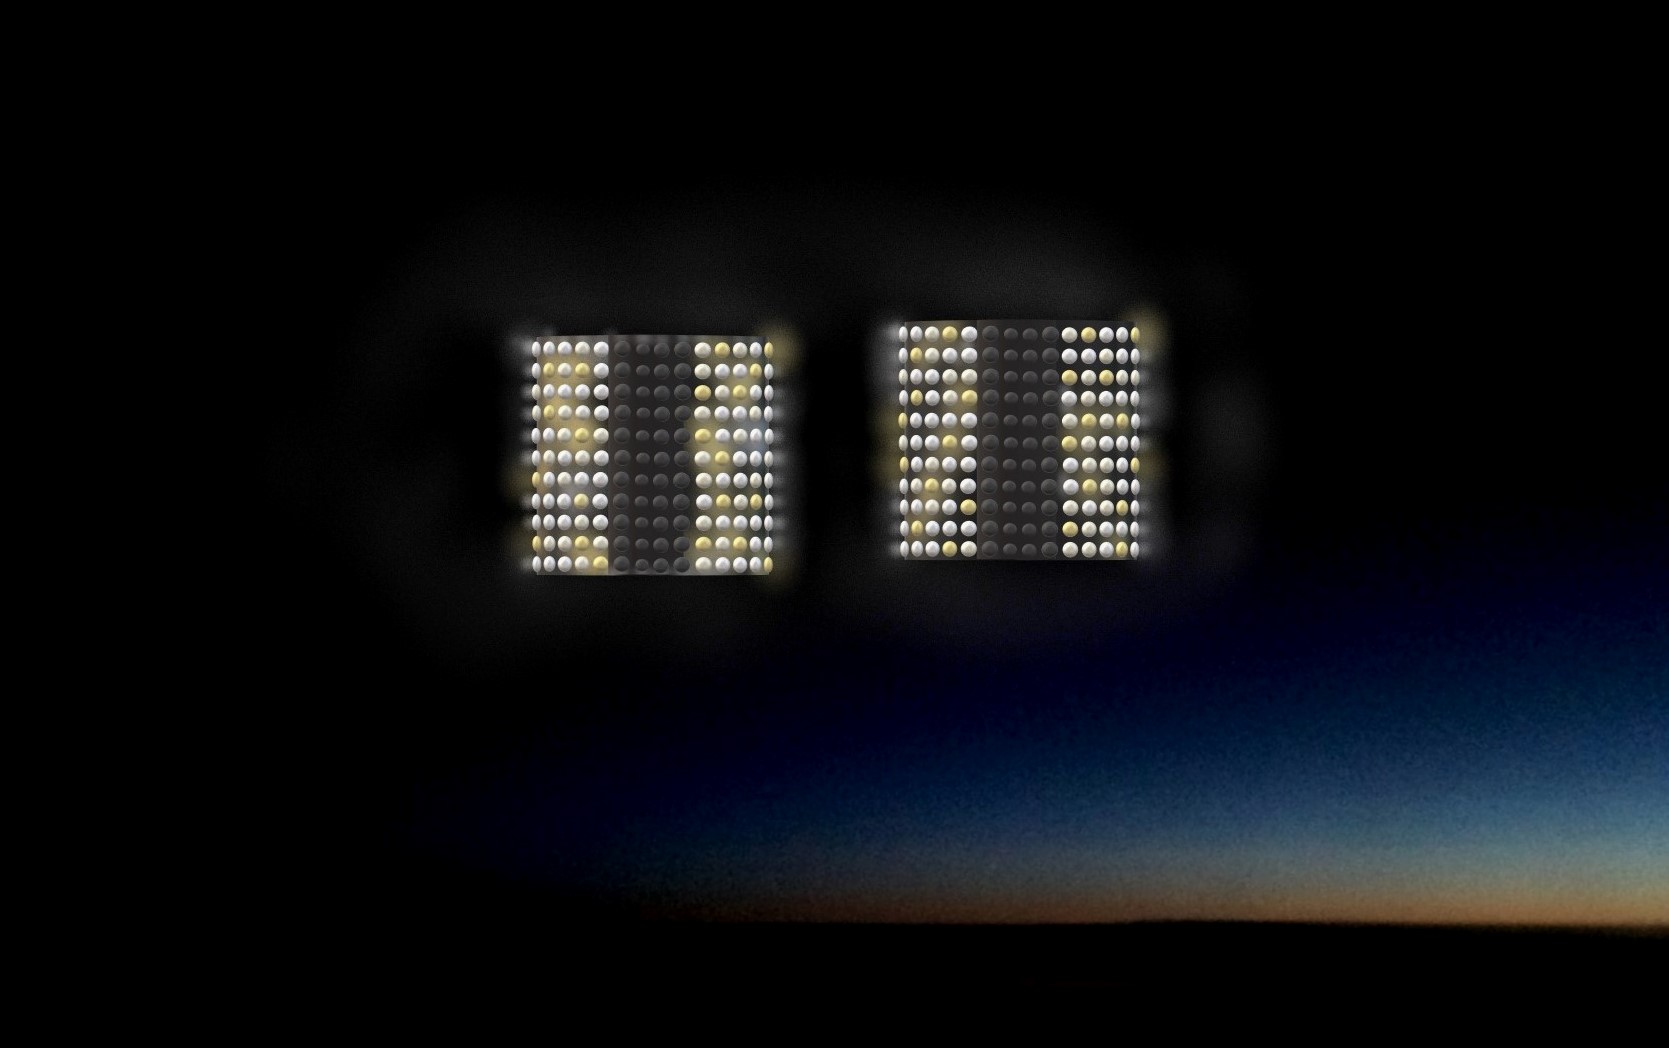 Художественное изображение светящихся объектов согласно описаниям обоих пилотов. Фото © Wikipedia